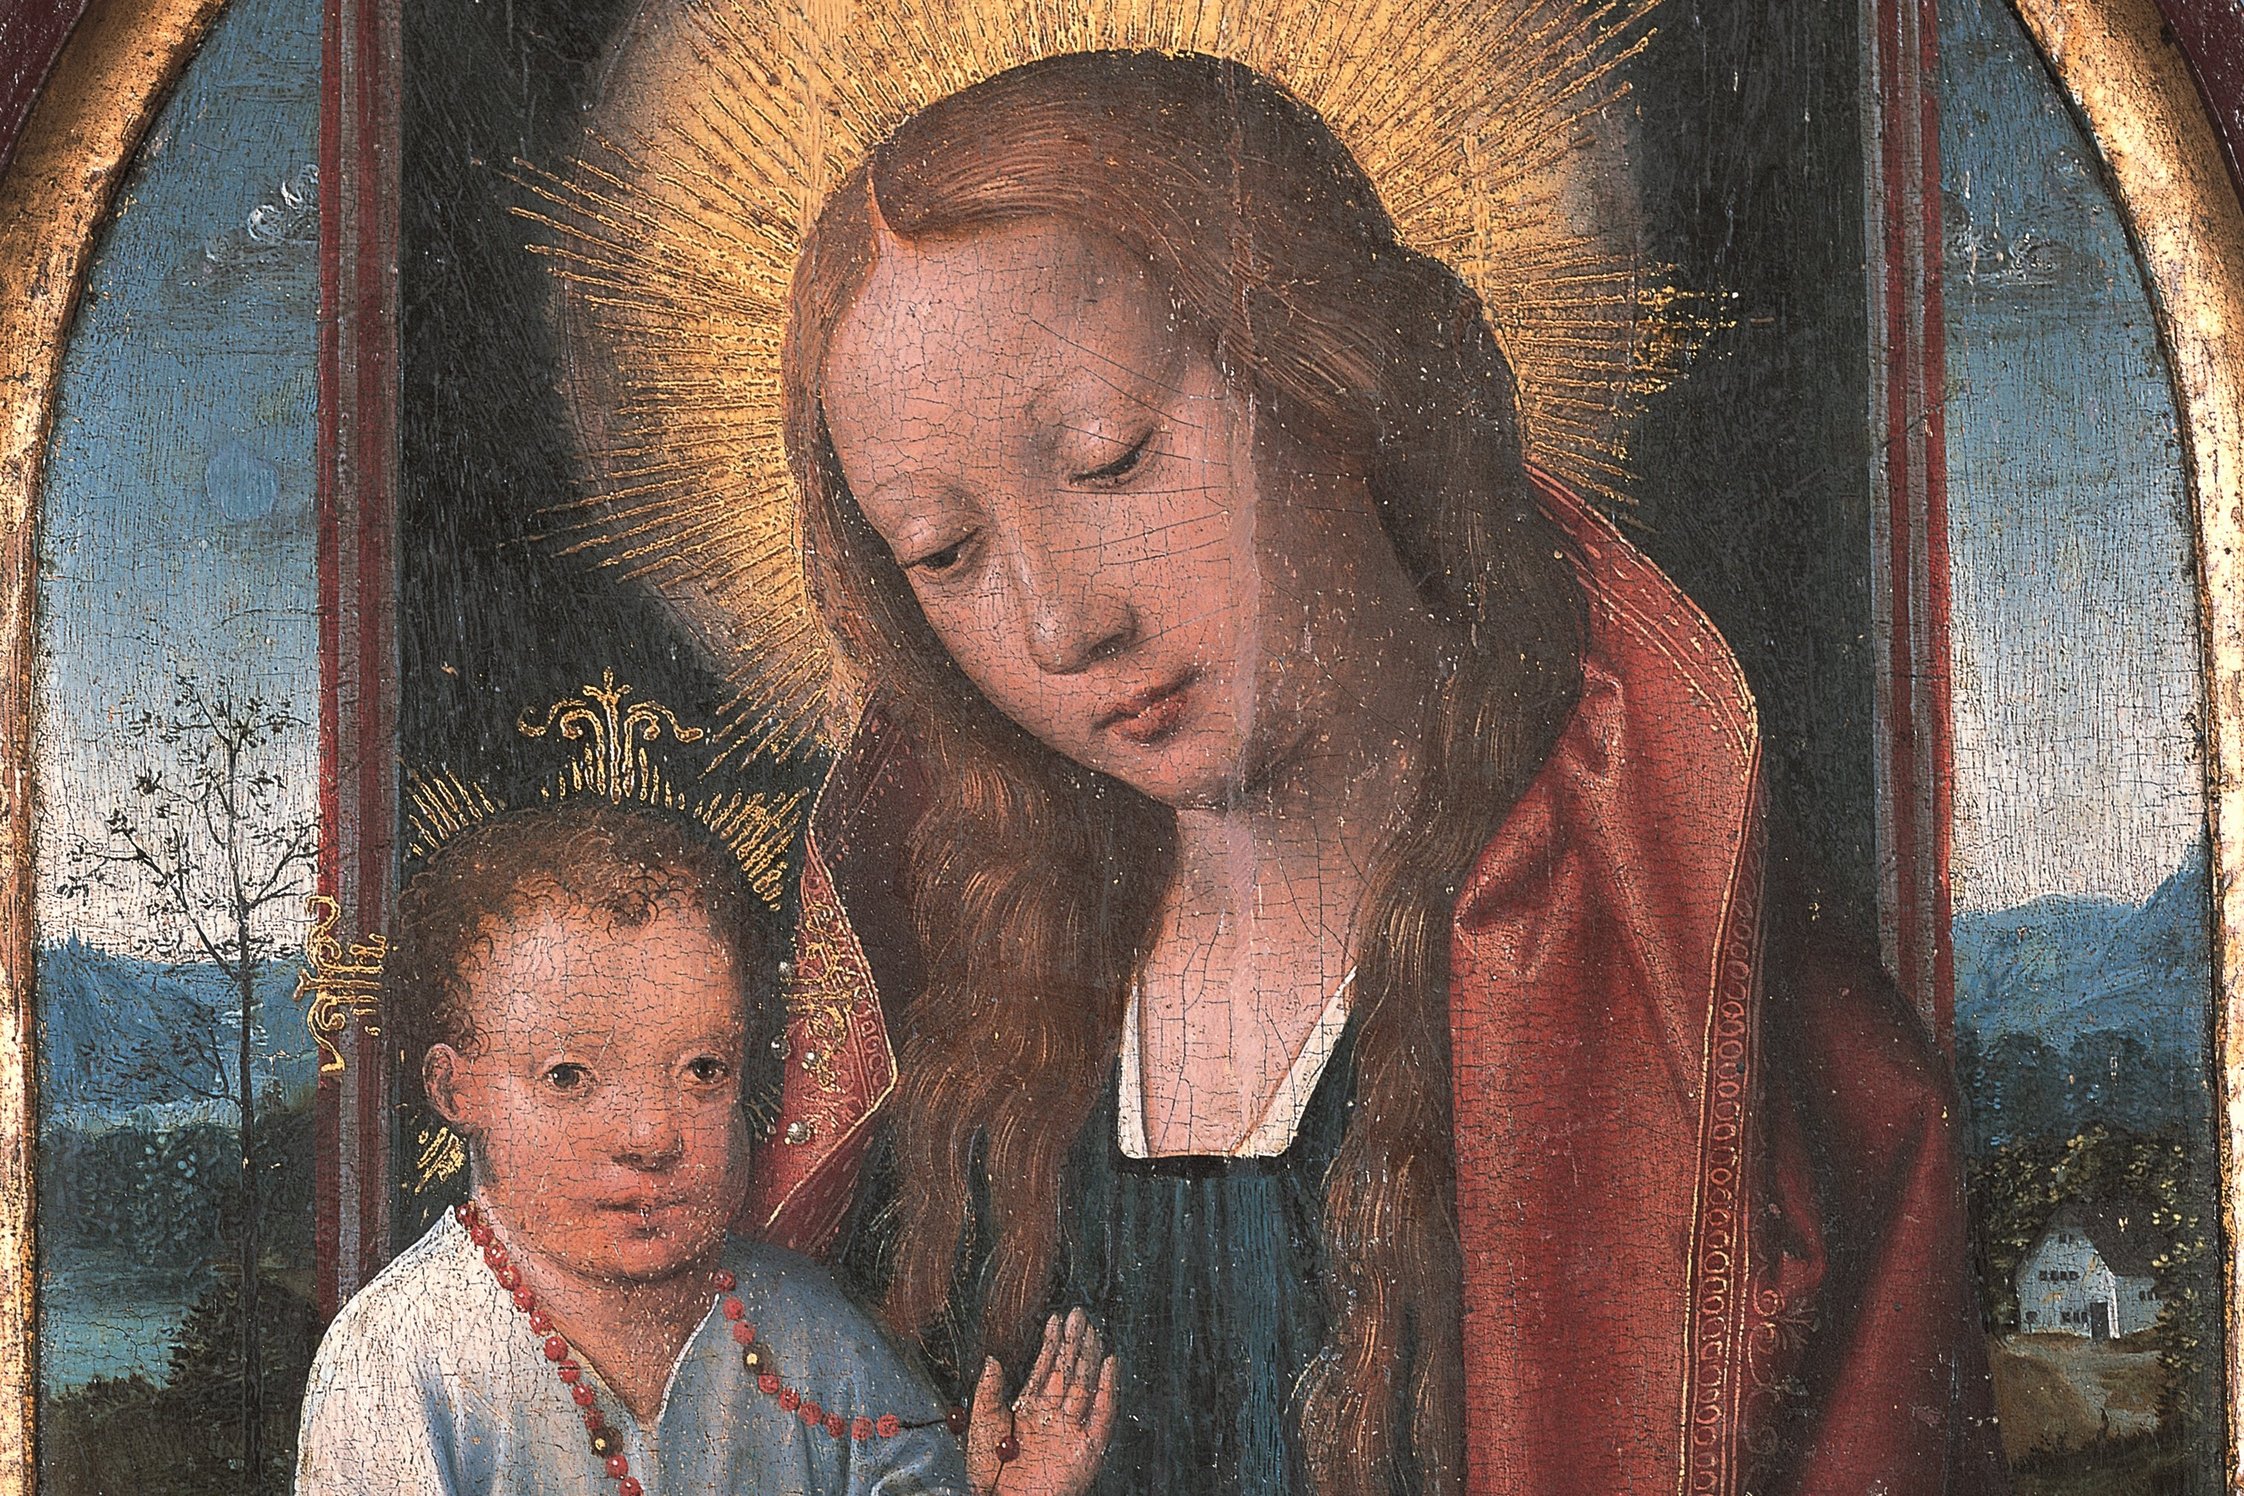 Ein Andachtsbild der Madonna mit dem Kind auf dem Schoß, beide mit Heiligenschein; zahlreiche Details im Bild, wie Früchte auf der Fensterbank im Vordergrund und Gebirgslandschaft mit Personen und Gebäude im Hintergrund.